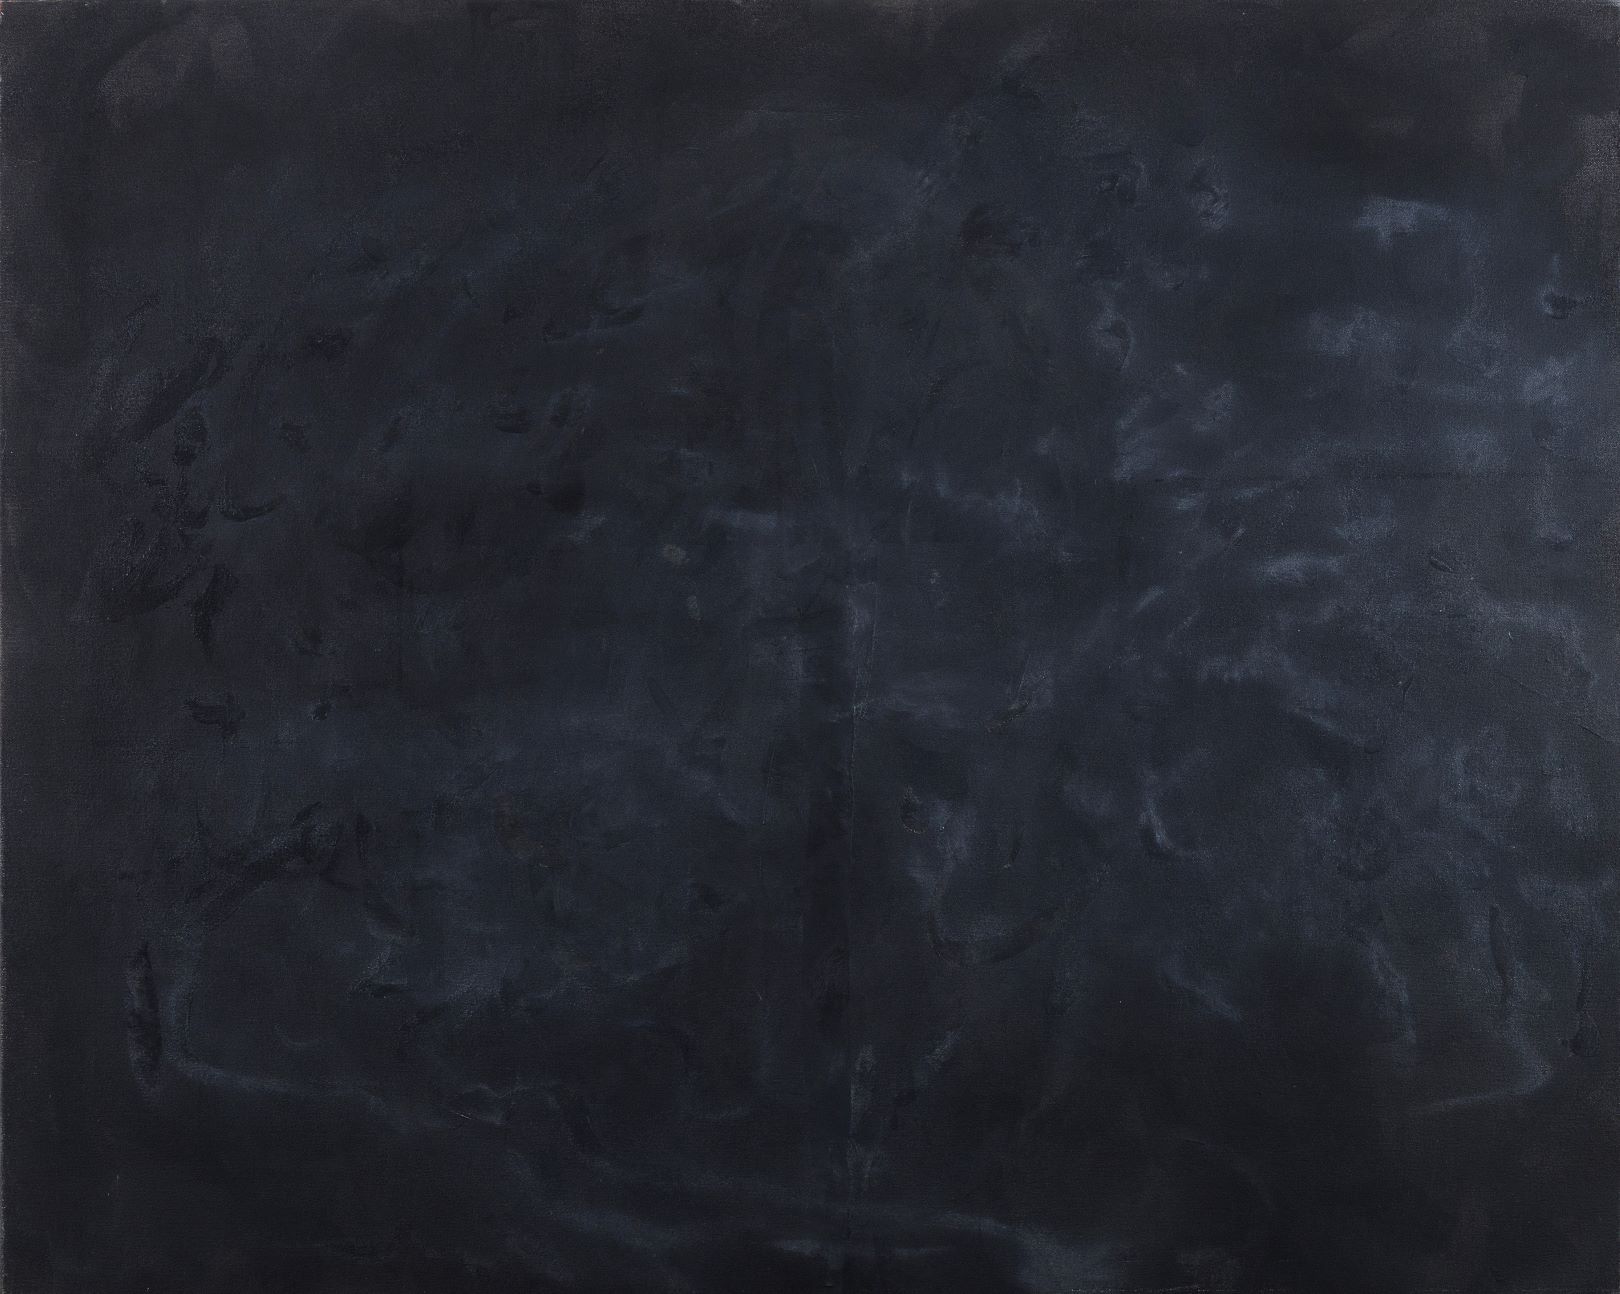 02.Paulo Lobo. Poema Negro 2018 óleo sobre tela 101 x 126,5 cm